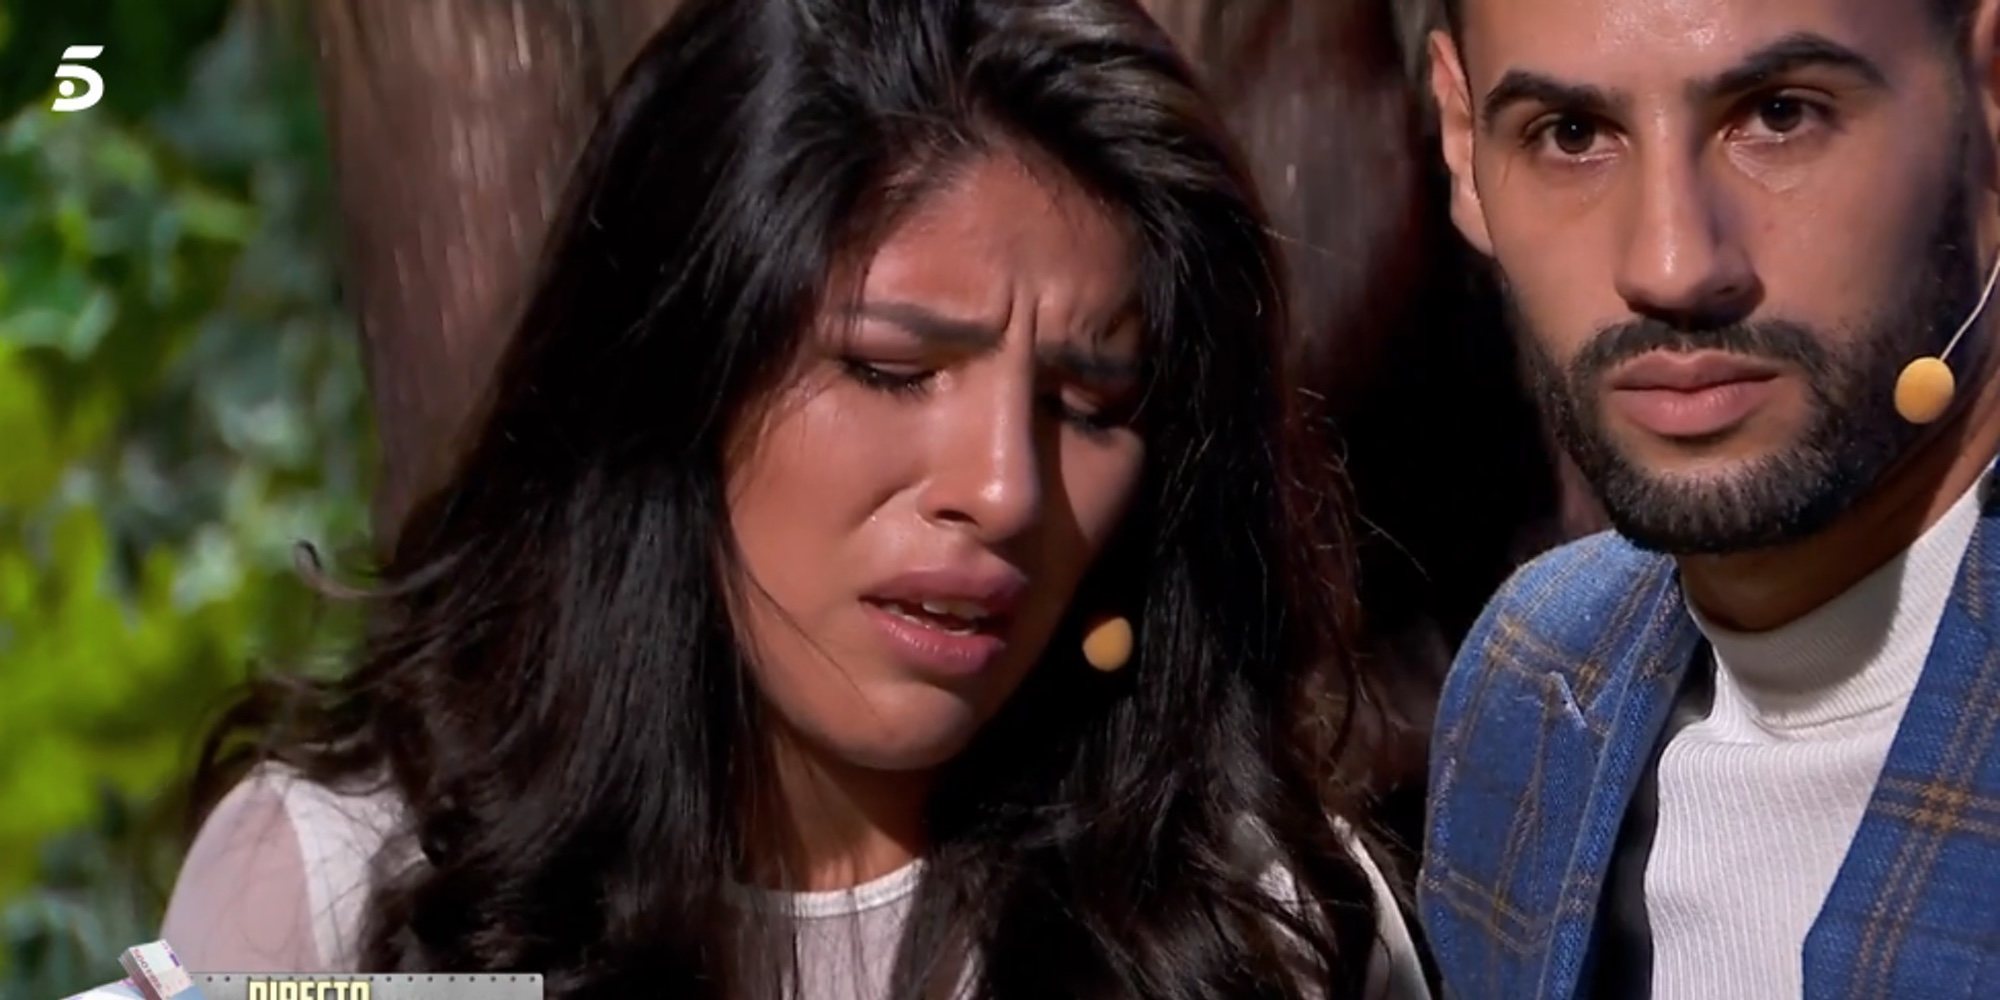 Isa Pantoja sufre un ataque de ansiedad en 'La casa fuerte' al conocer detalles de la exclusiva de Kiko Rivera